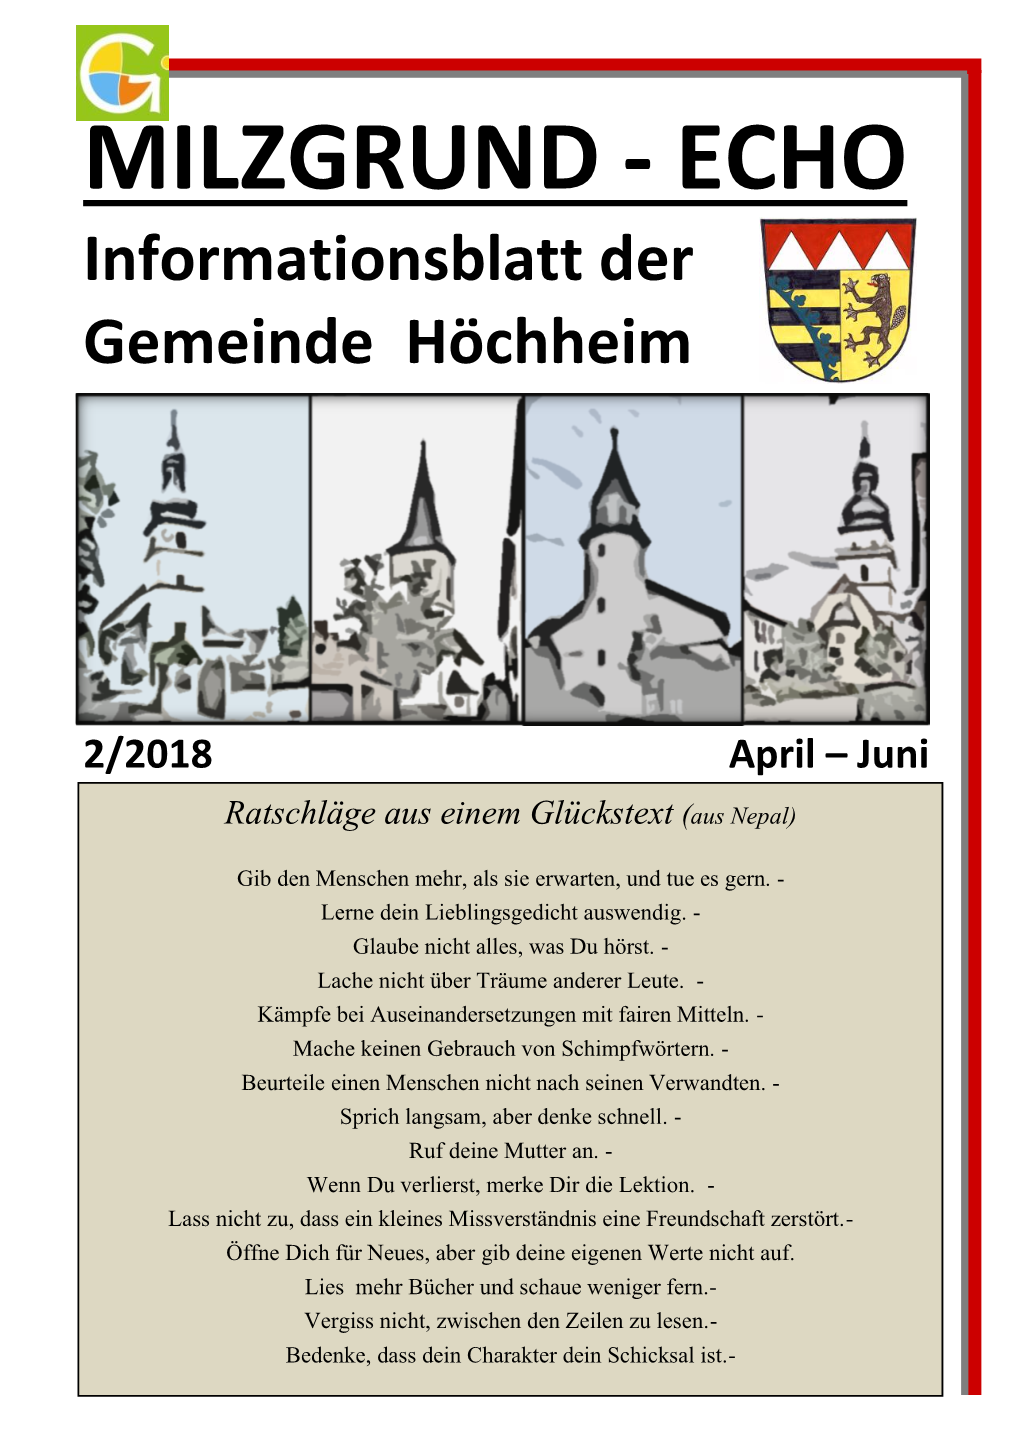 MILZGRUND - ECHO Informationsblatt Der Gemeinde Höchheim